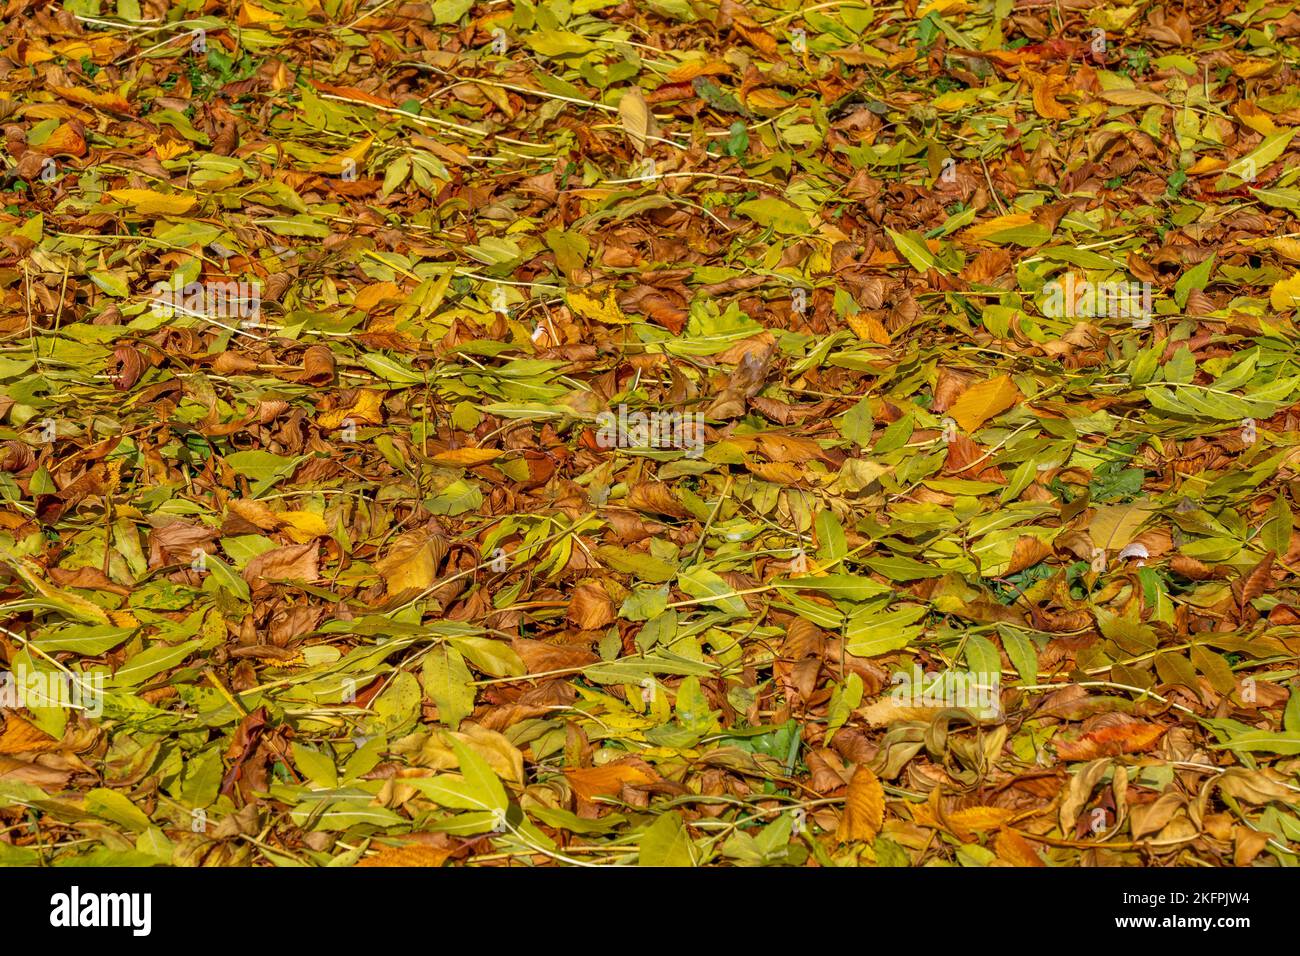 Farbenfrohe Rückseite mit herbstlichen Herbstblättern, Nahaufnahme von gelben und orangefarbenen Blättern. Hochwertige Fotos Stockfoto